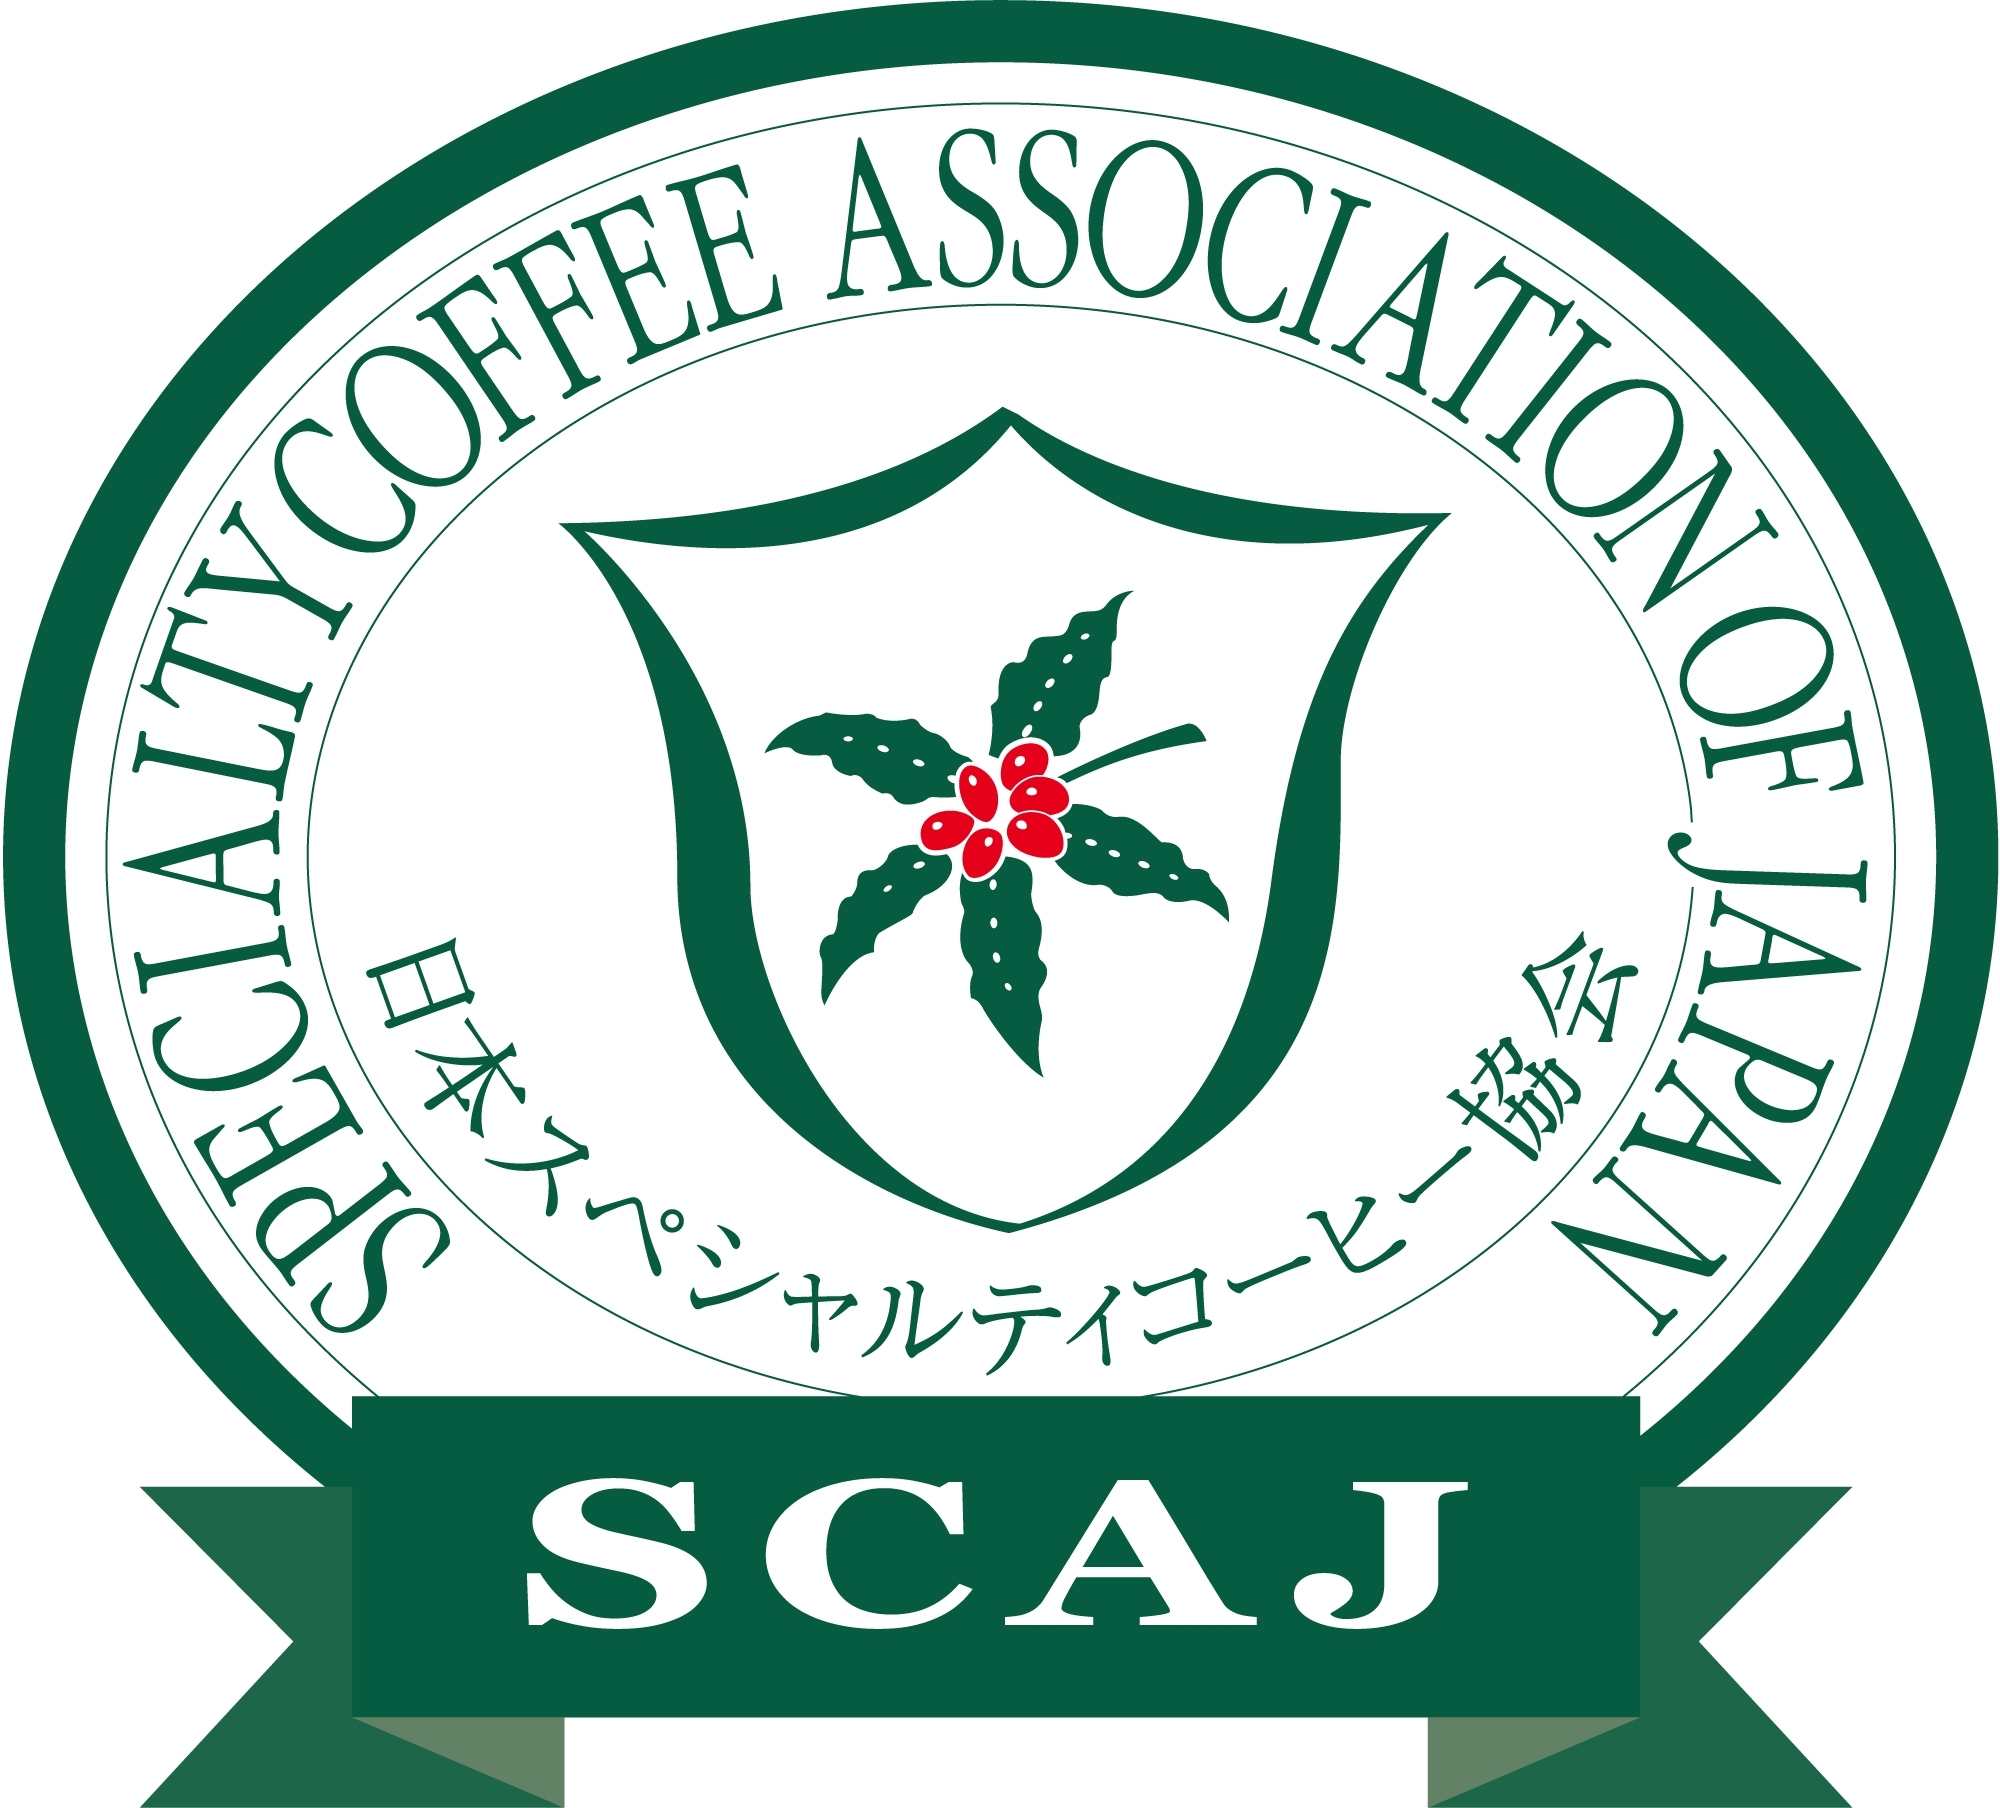 スペシャルティコーヒー協会